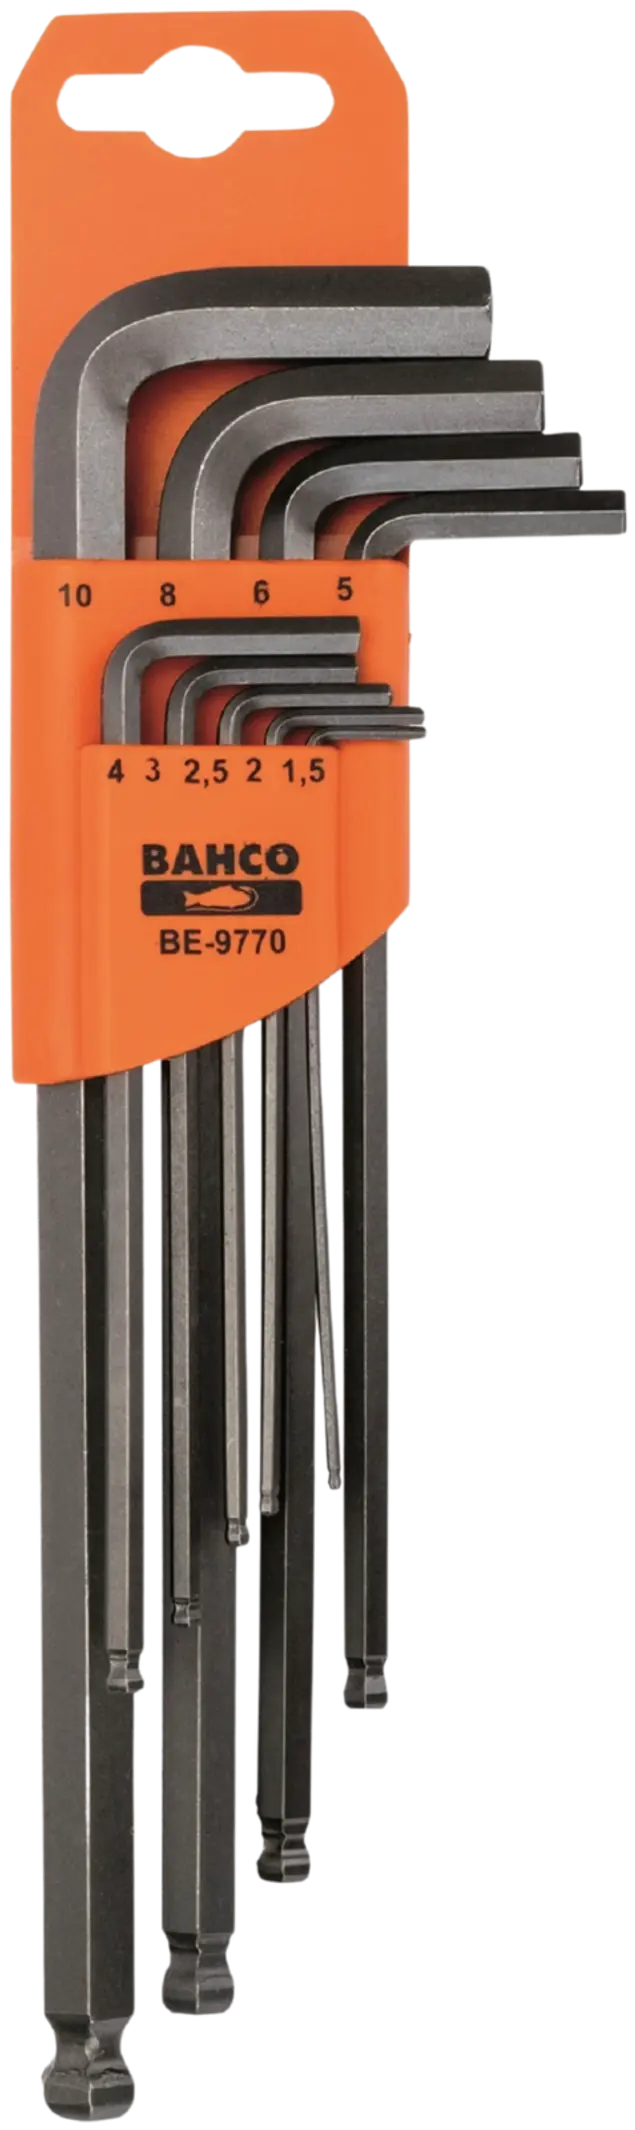 Bahco 9-osainen kuusiokolosarja BE-9770